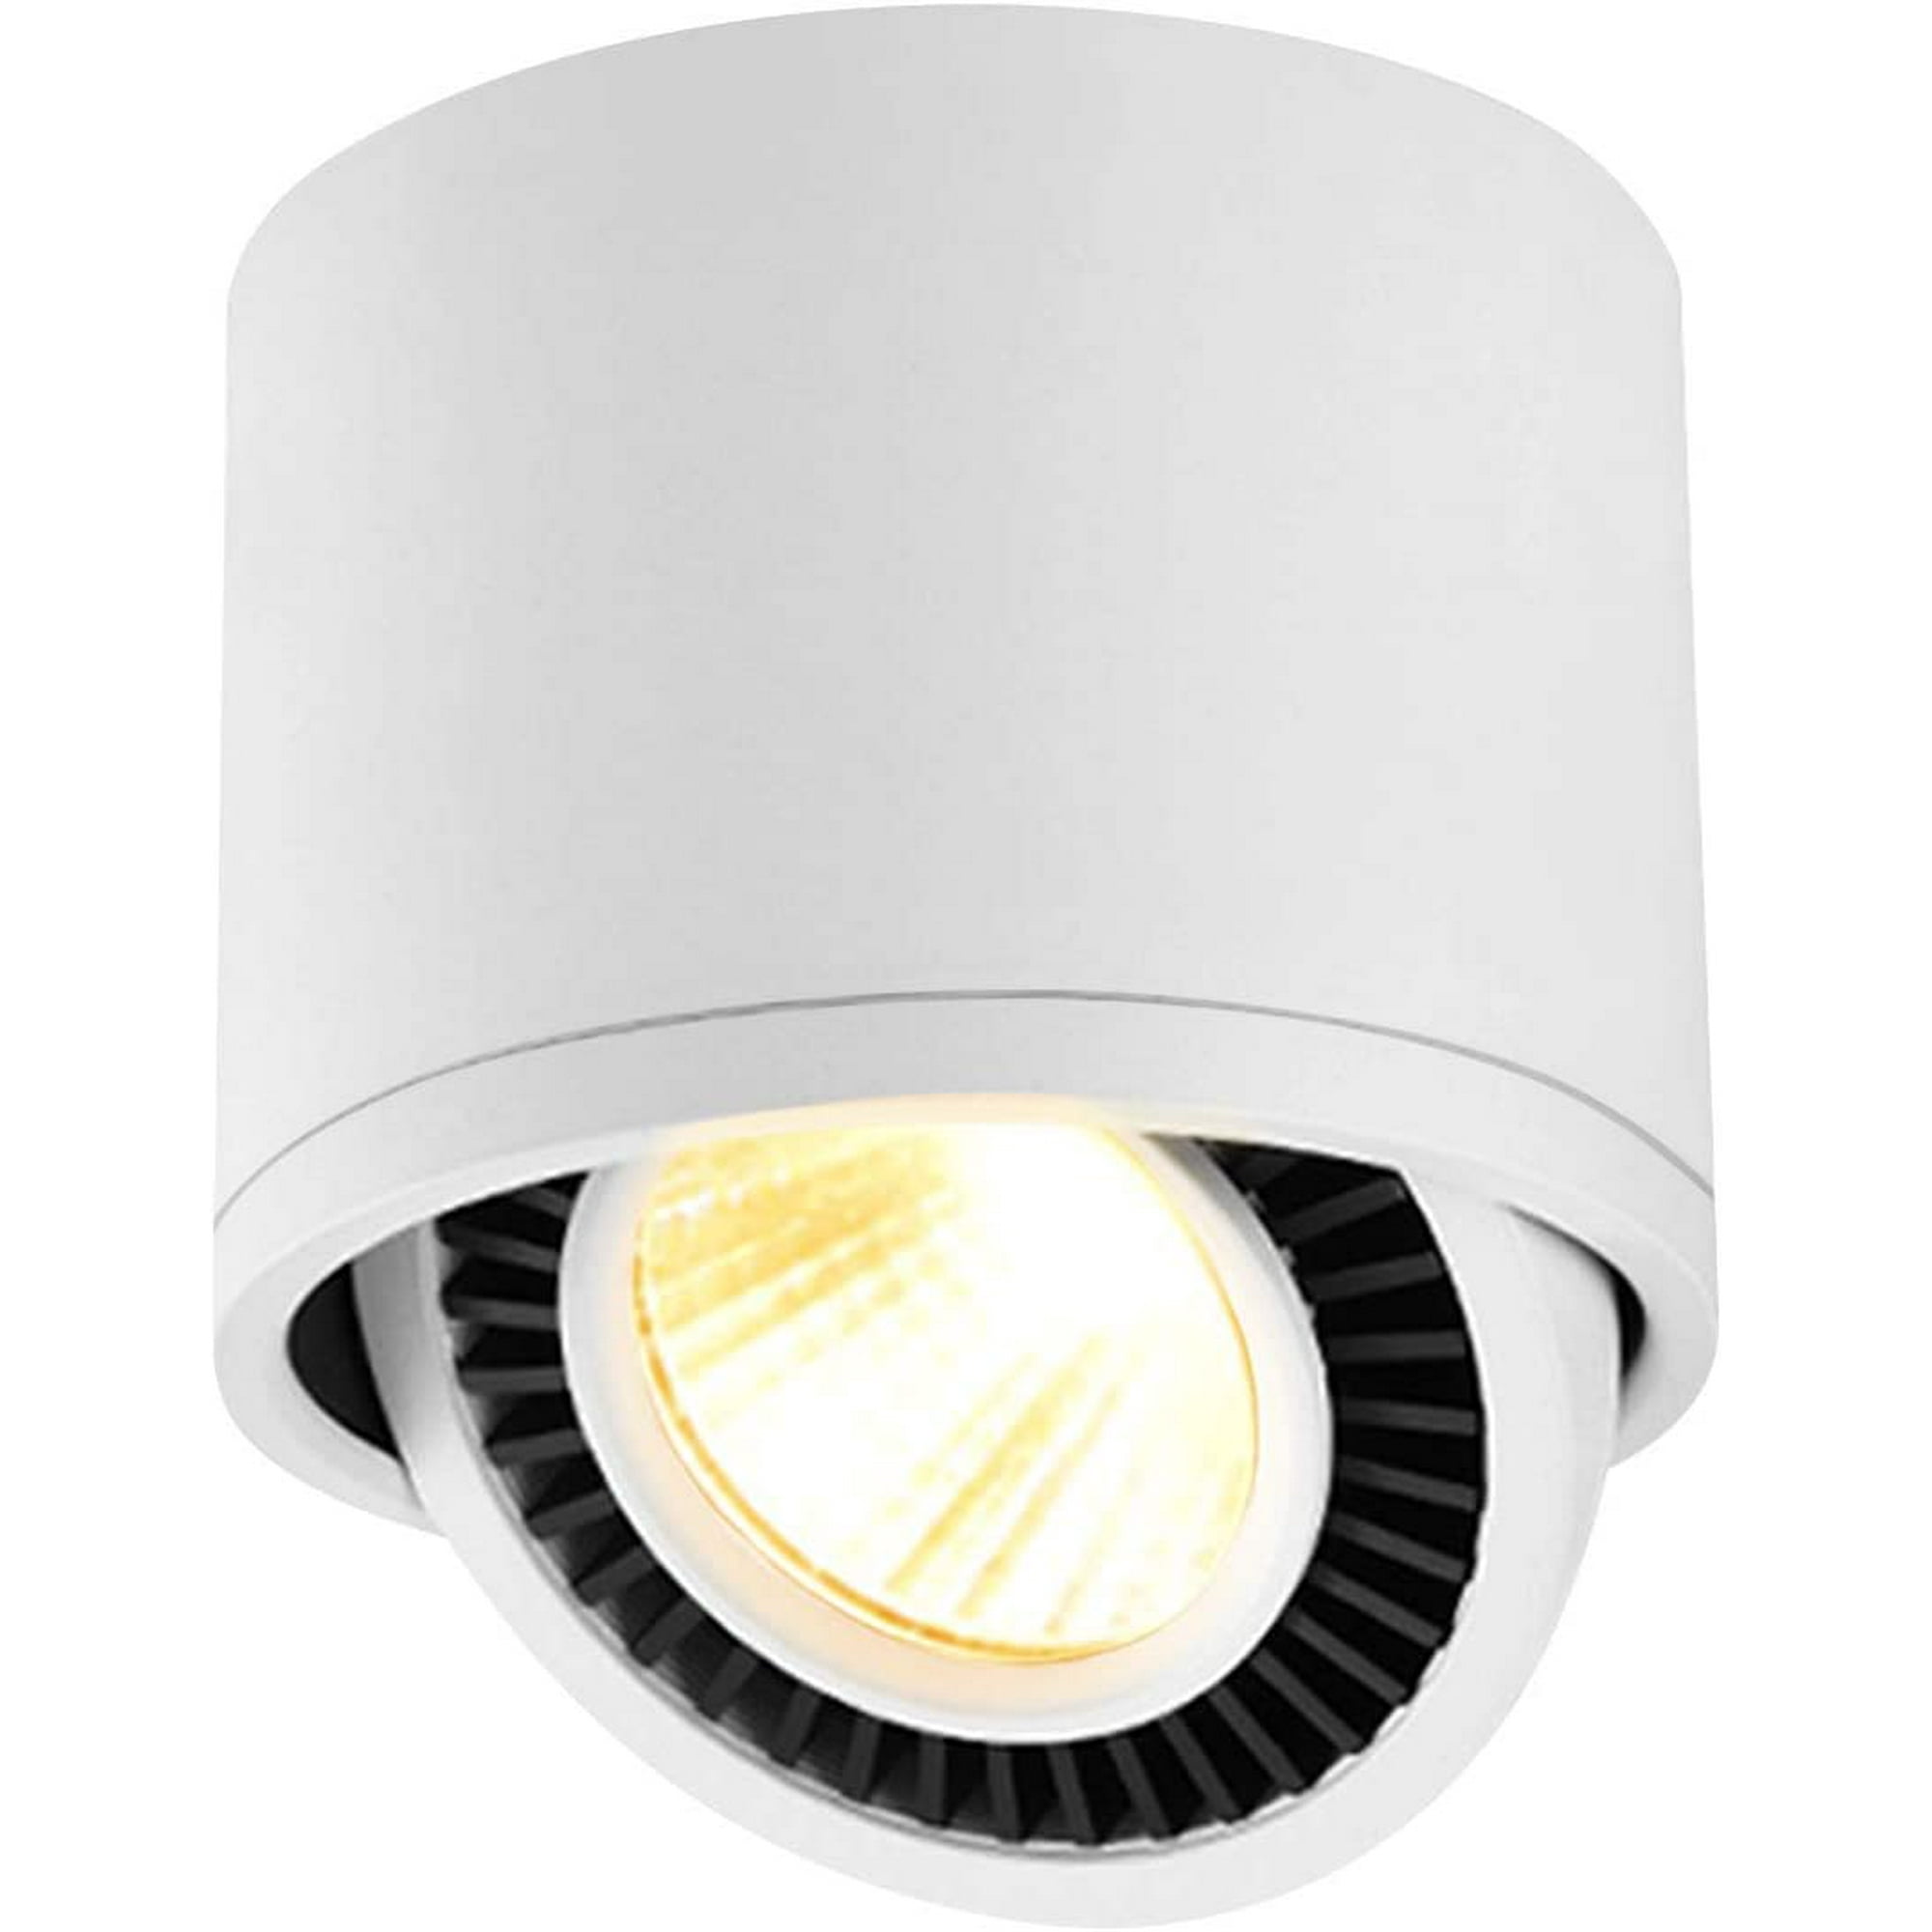 Foco Led interior de 5w, luz de techo ajustable 360 giratoria e iluminación  de superficie Cob Led 10x10cm / lámpara de pared de aluminio (blanco-3000k)  [clase de energía A +